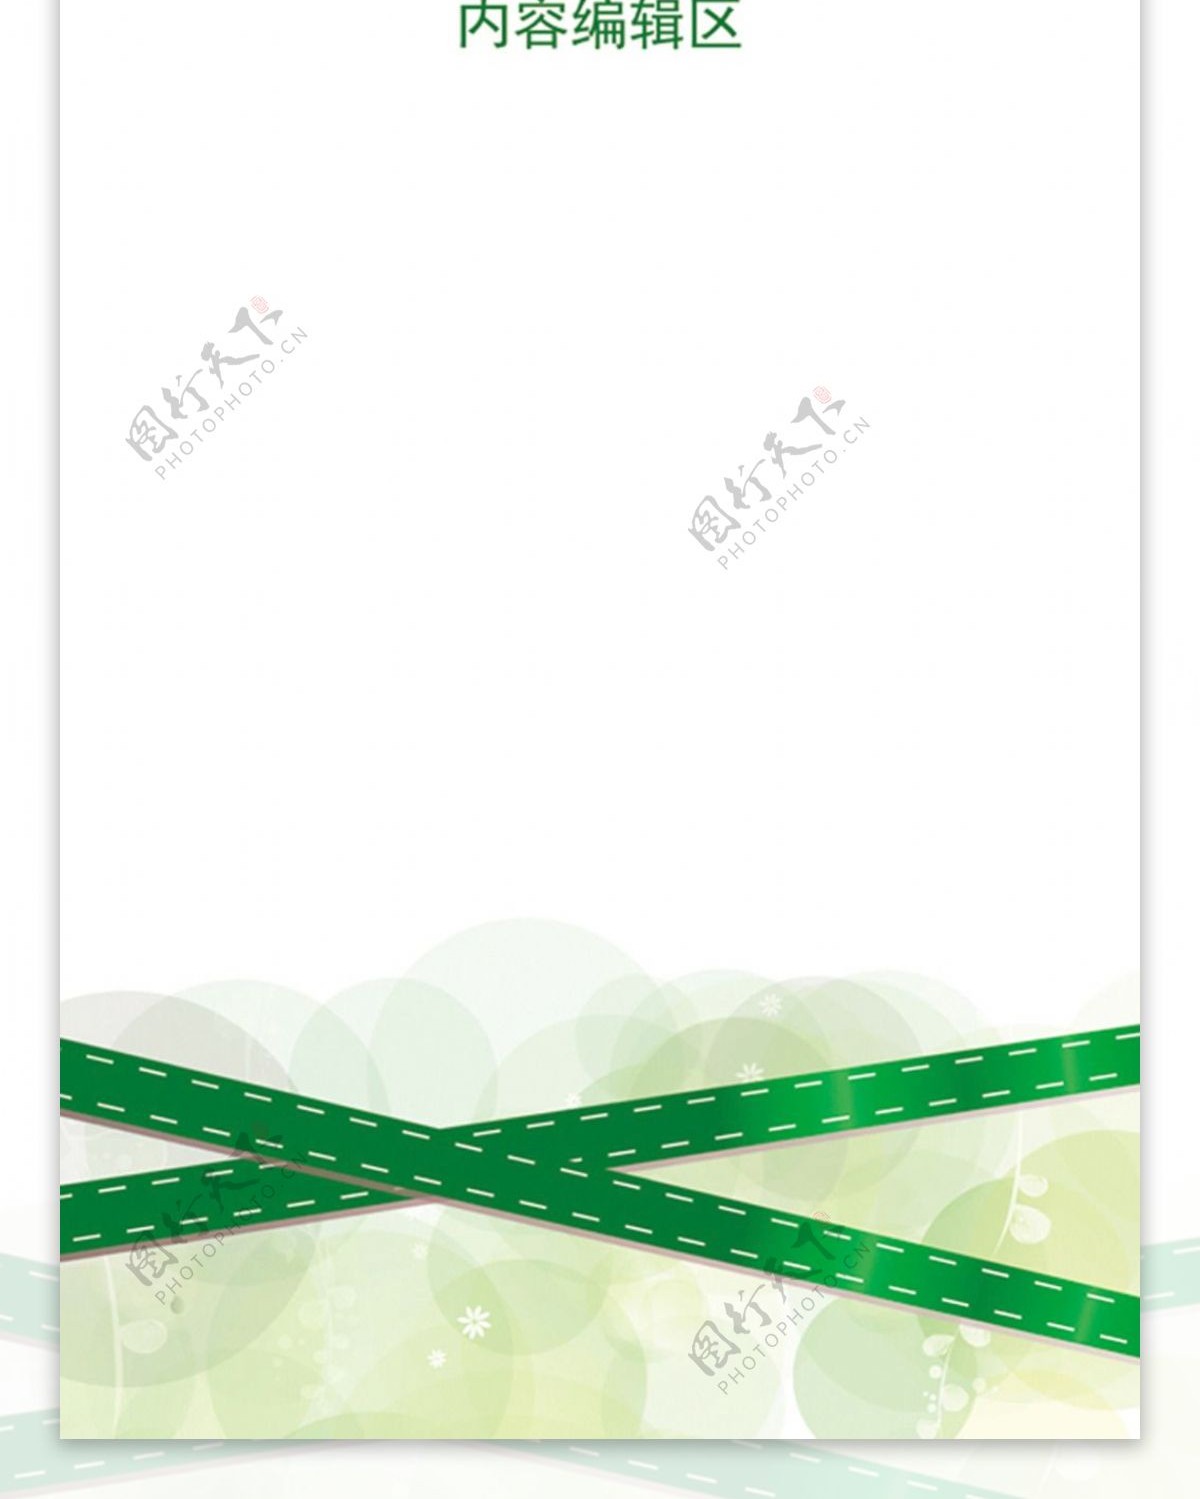 绿色中国结素材展架模板设计画面